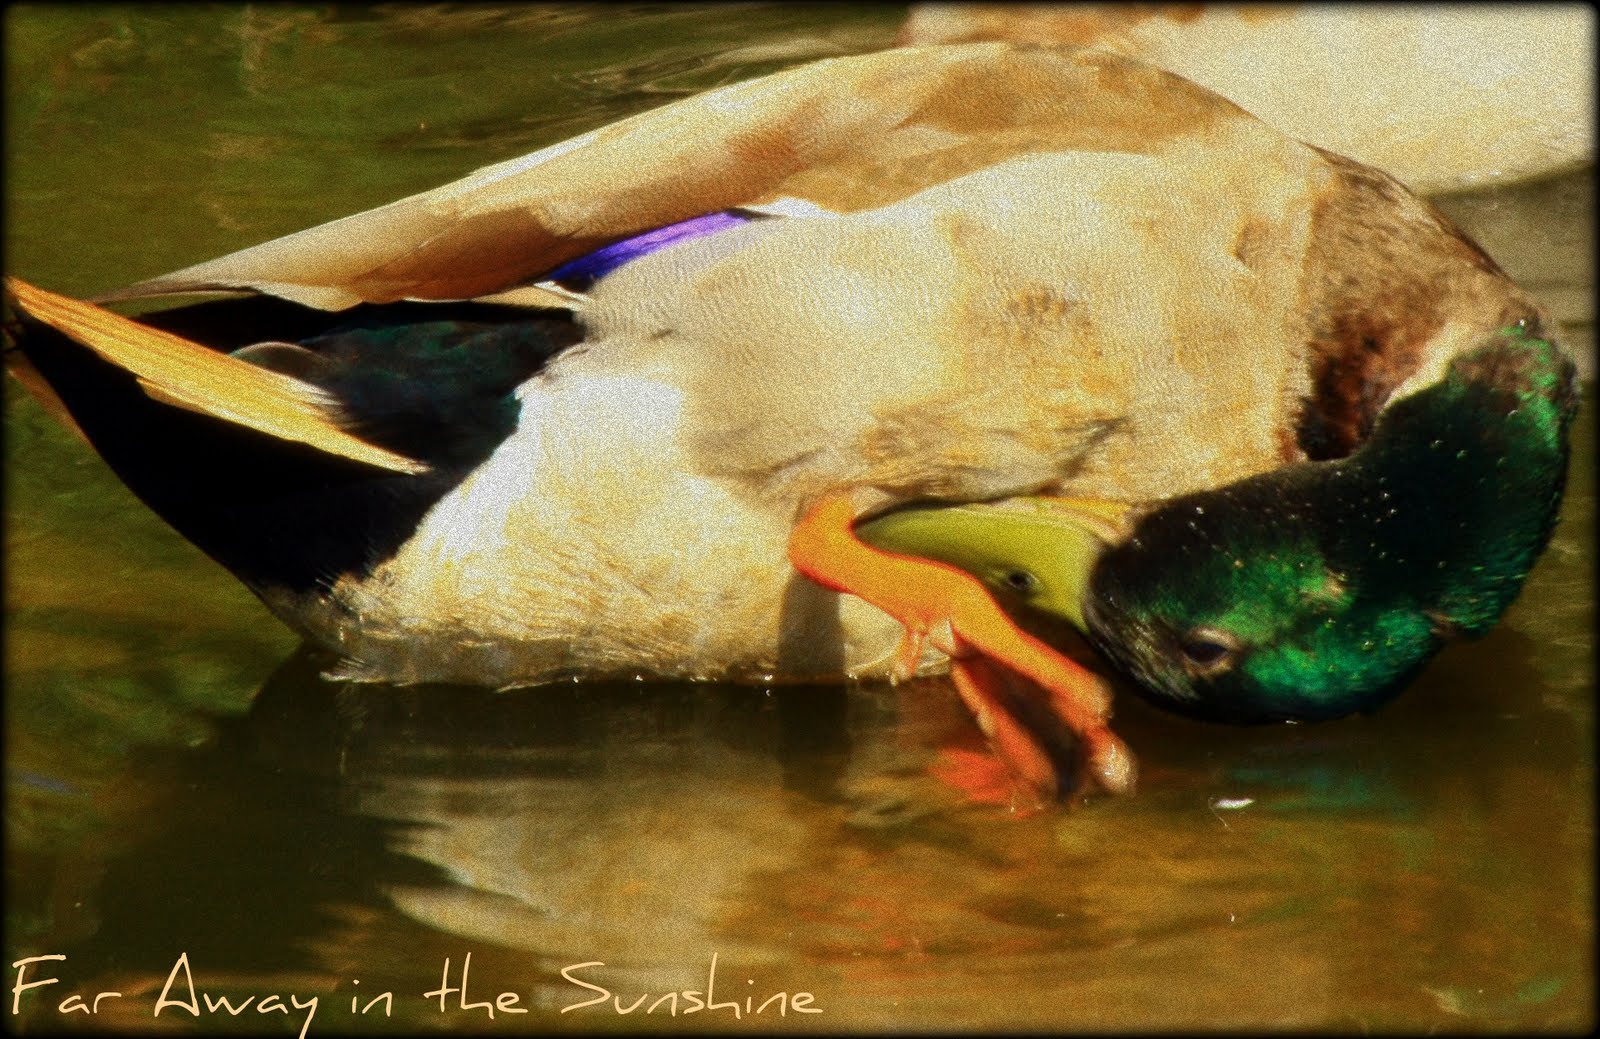 a duck quacking